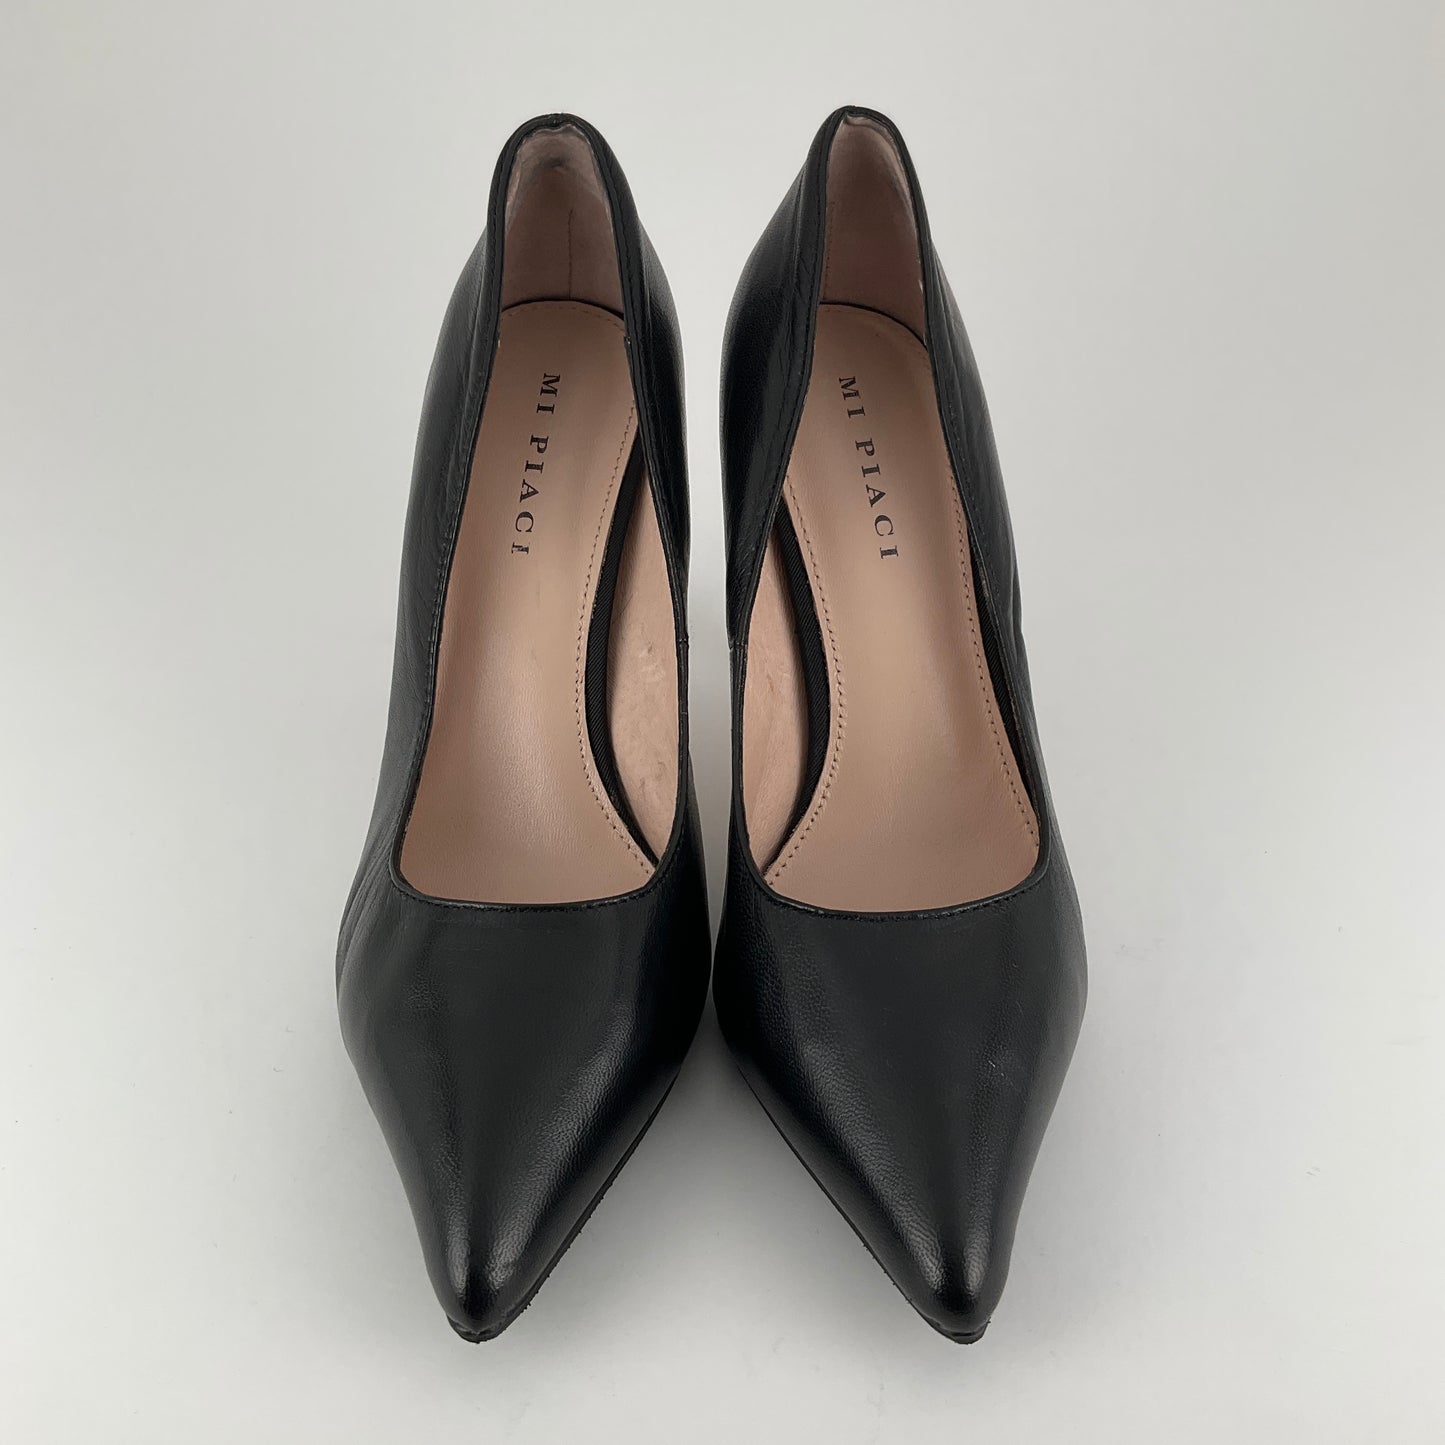 Mi Piaci - Black Heels - Size 39